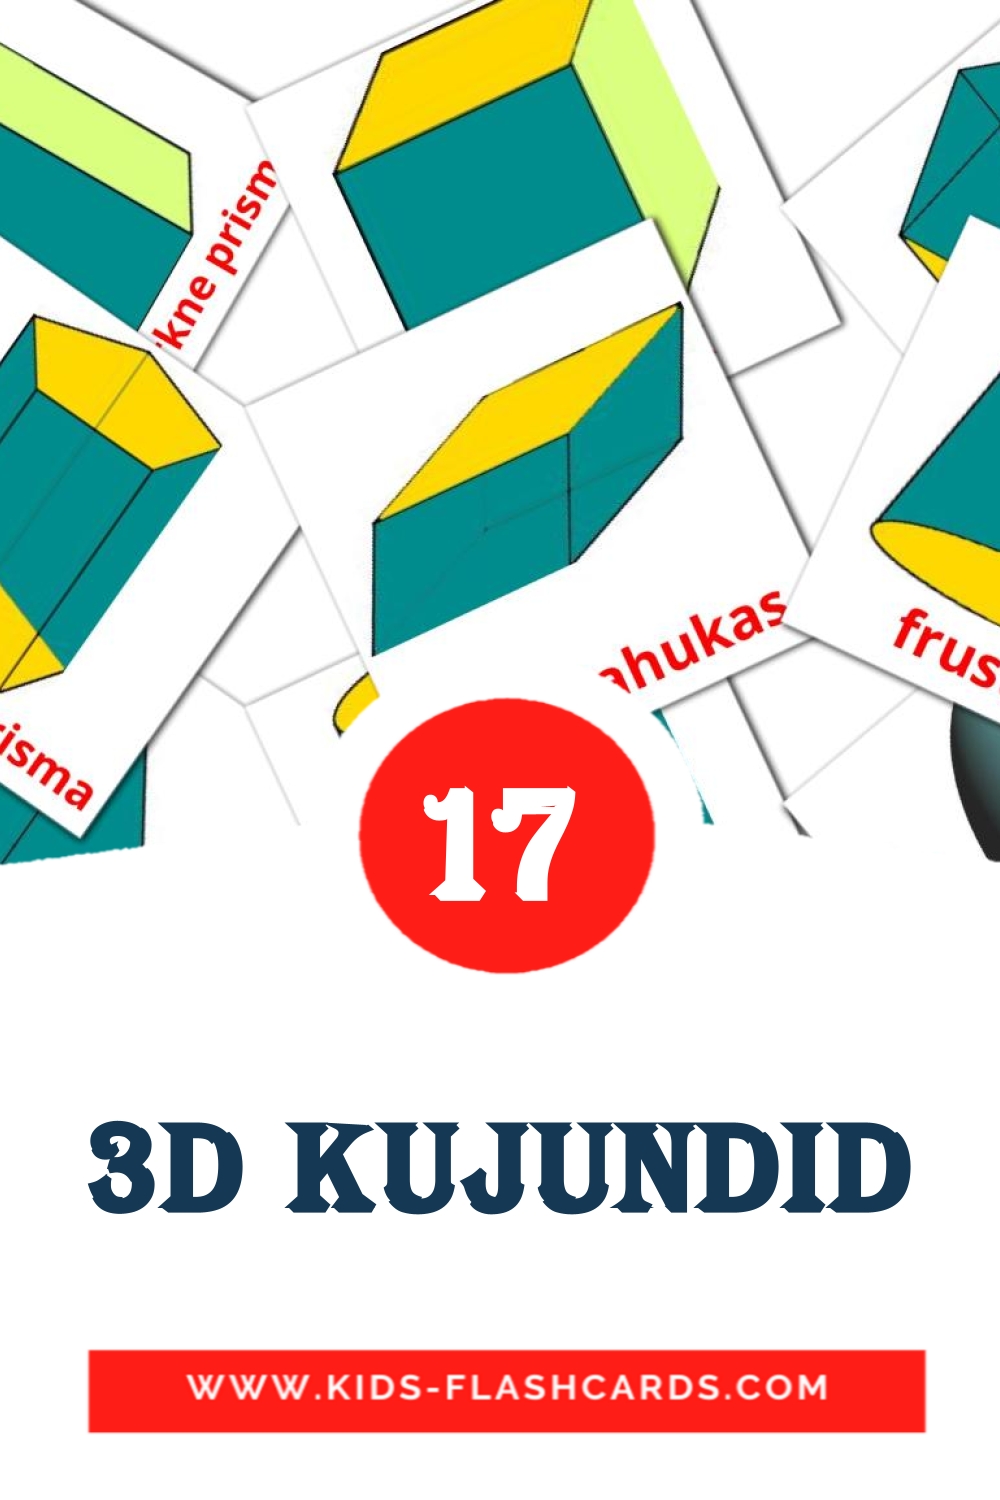 17 cartes illustrées de 3D kujundid pour la maternelle en estonien